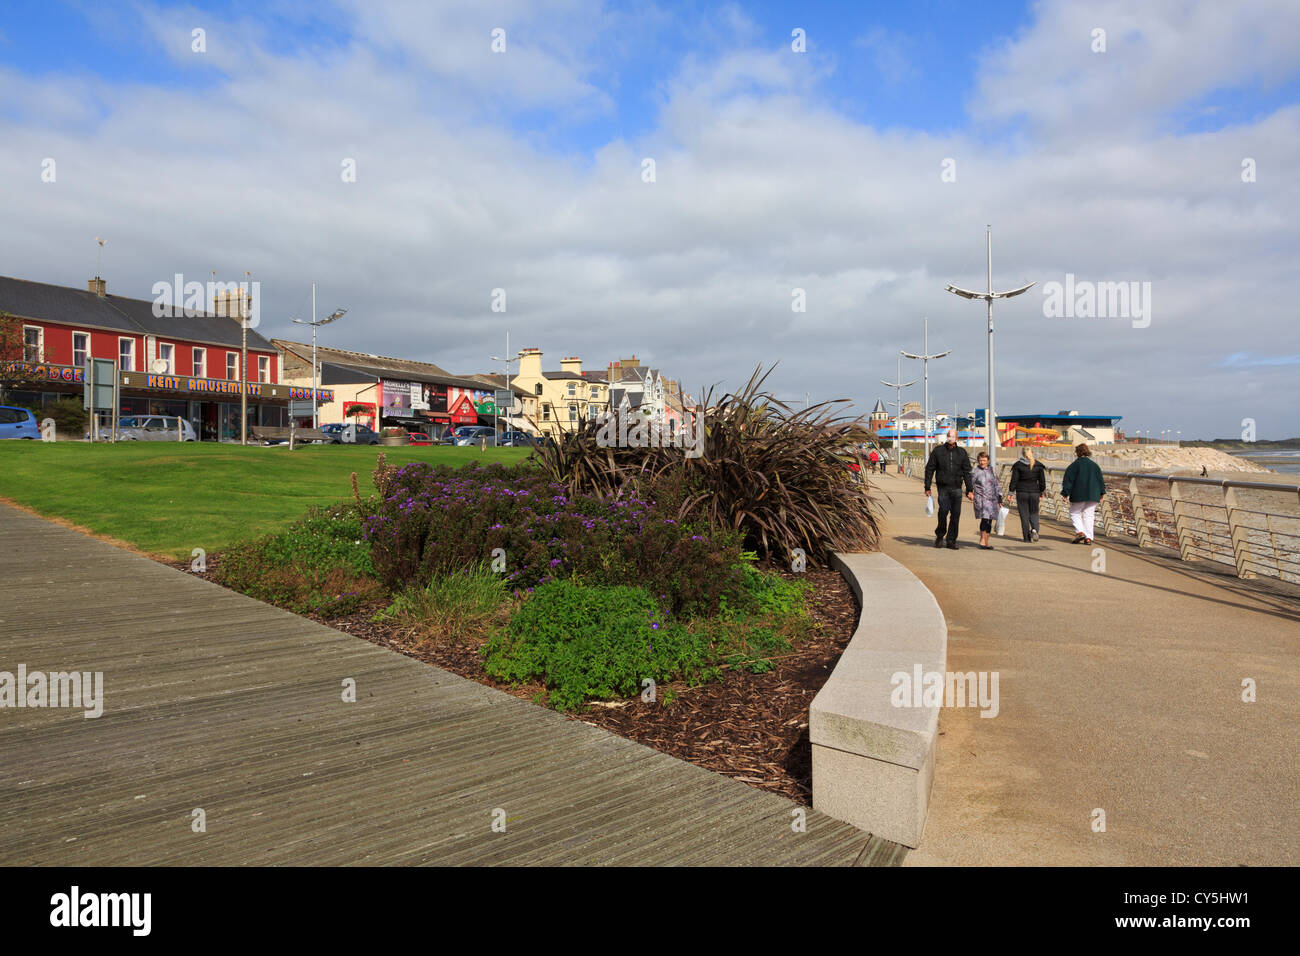 Les gens qui marchent sur la promenade du front de mer d'une station balnéaire sur la côte est à Newcastle, Co vers le bas, l'Irlande du Nord, Royaume-Uni Banque D'Images